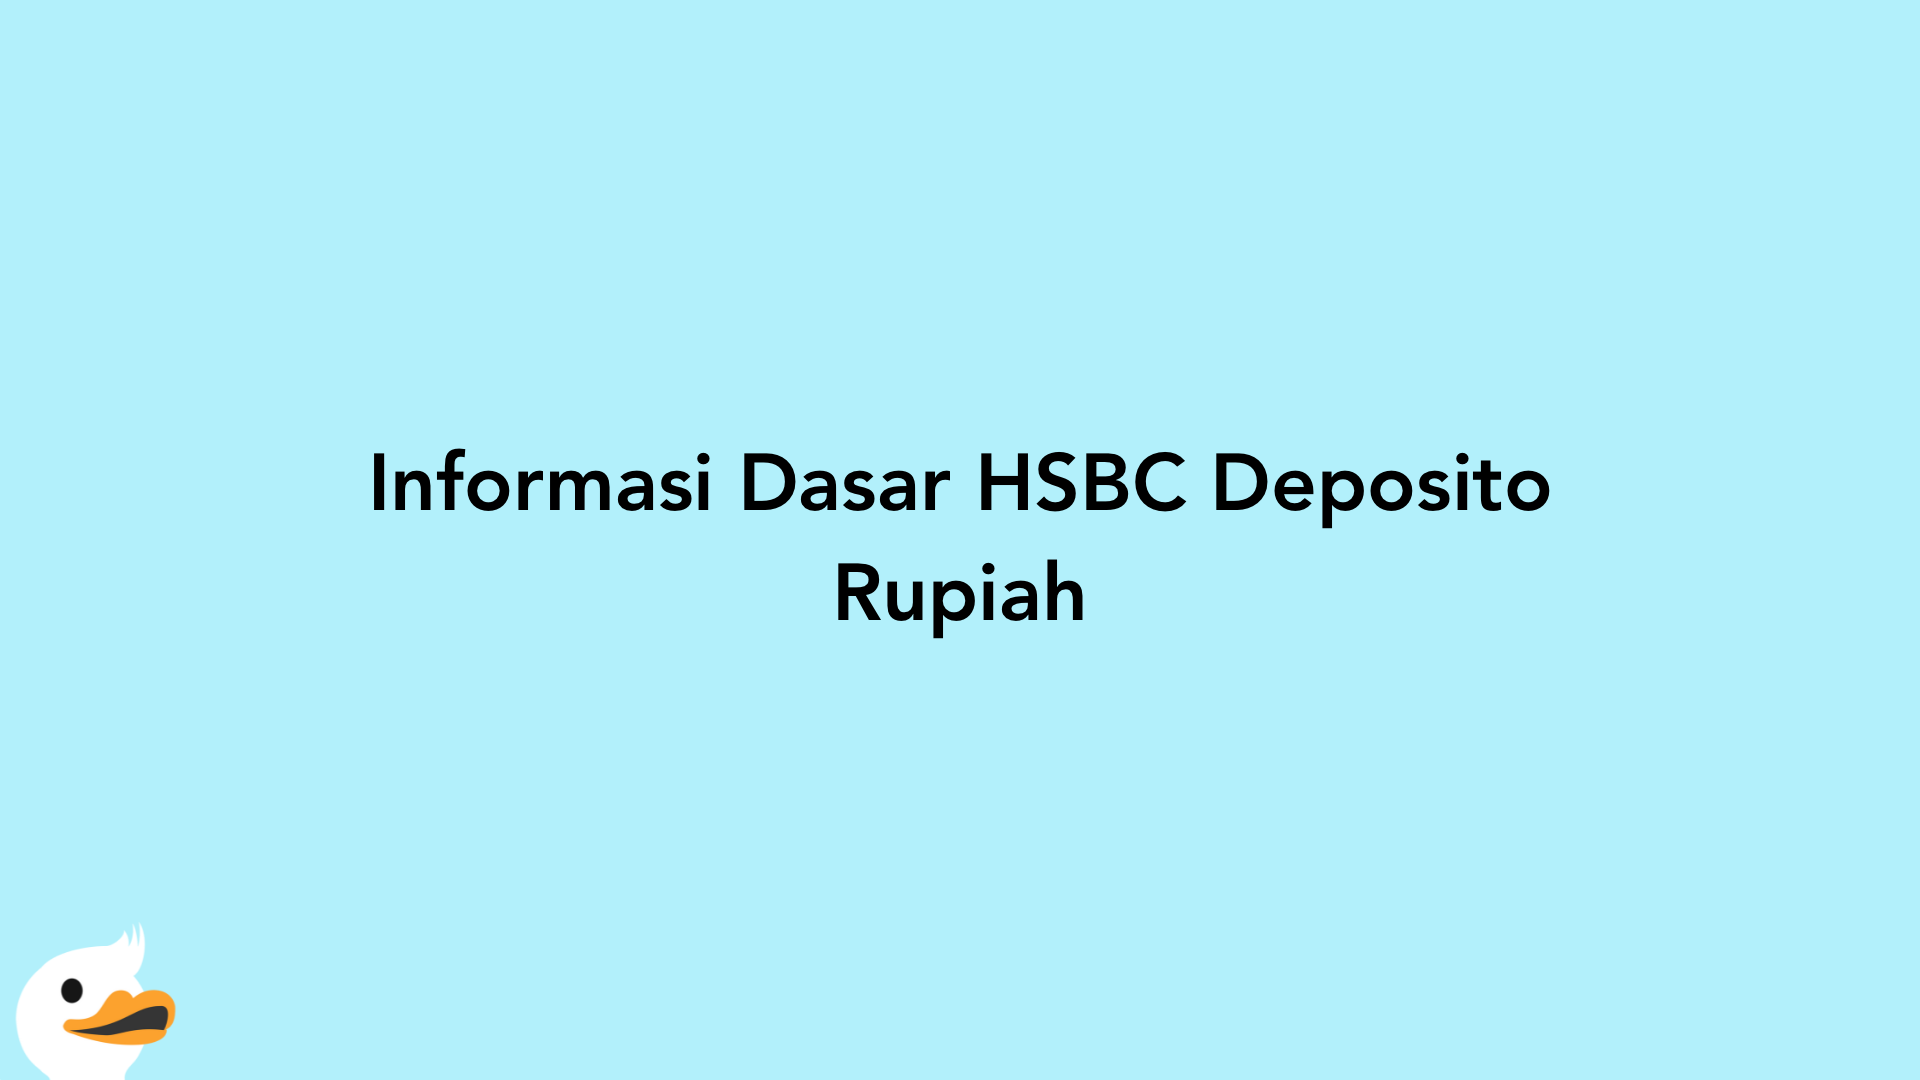 Informasi Dasar HSBC Deposito Rupiah